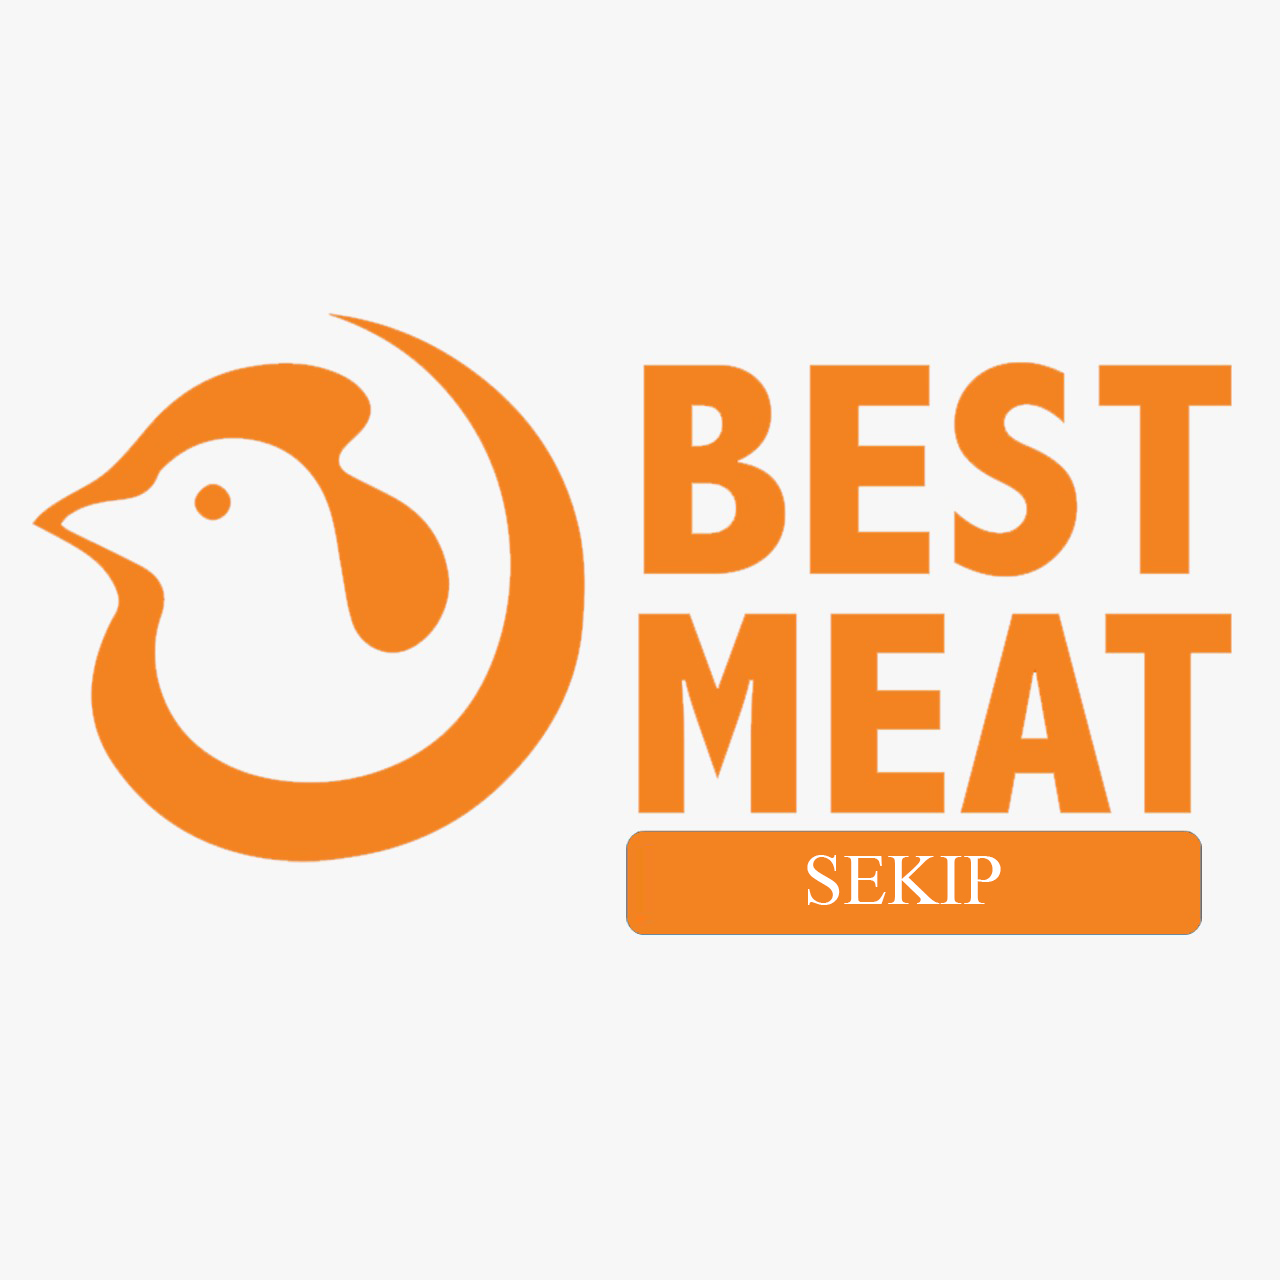 Best Meat Sekip